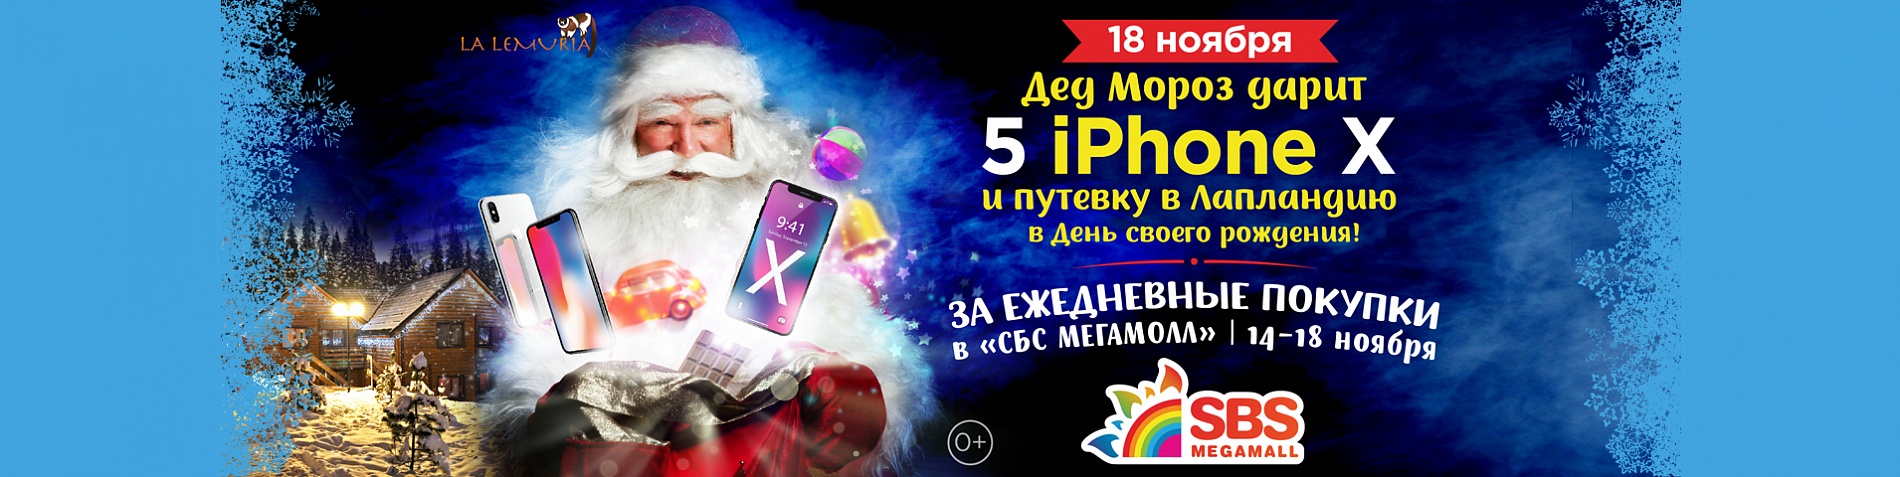 Дед Мороз дарит 5 IPhone X!